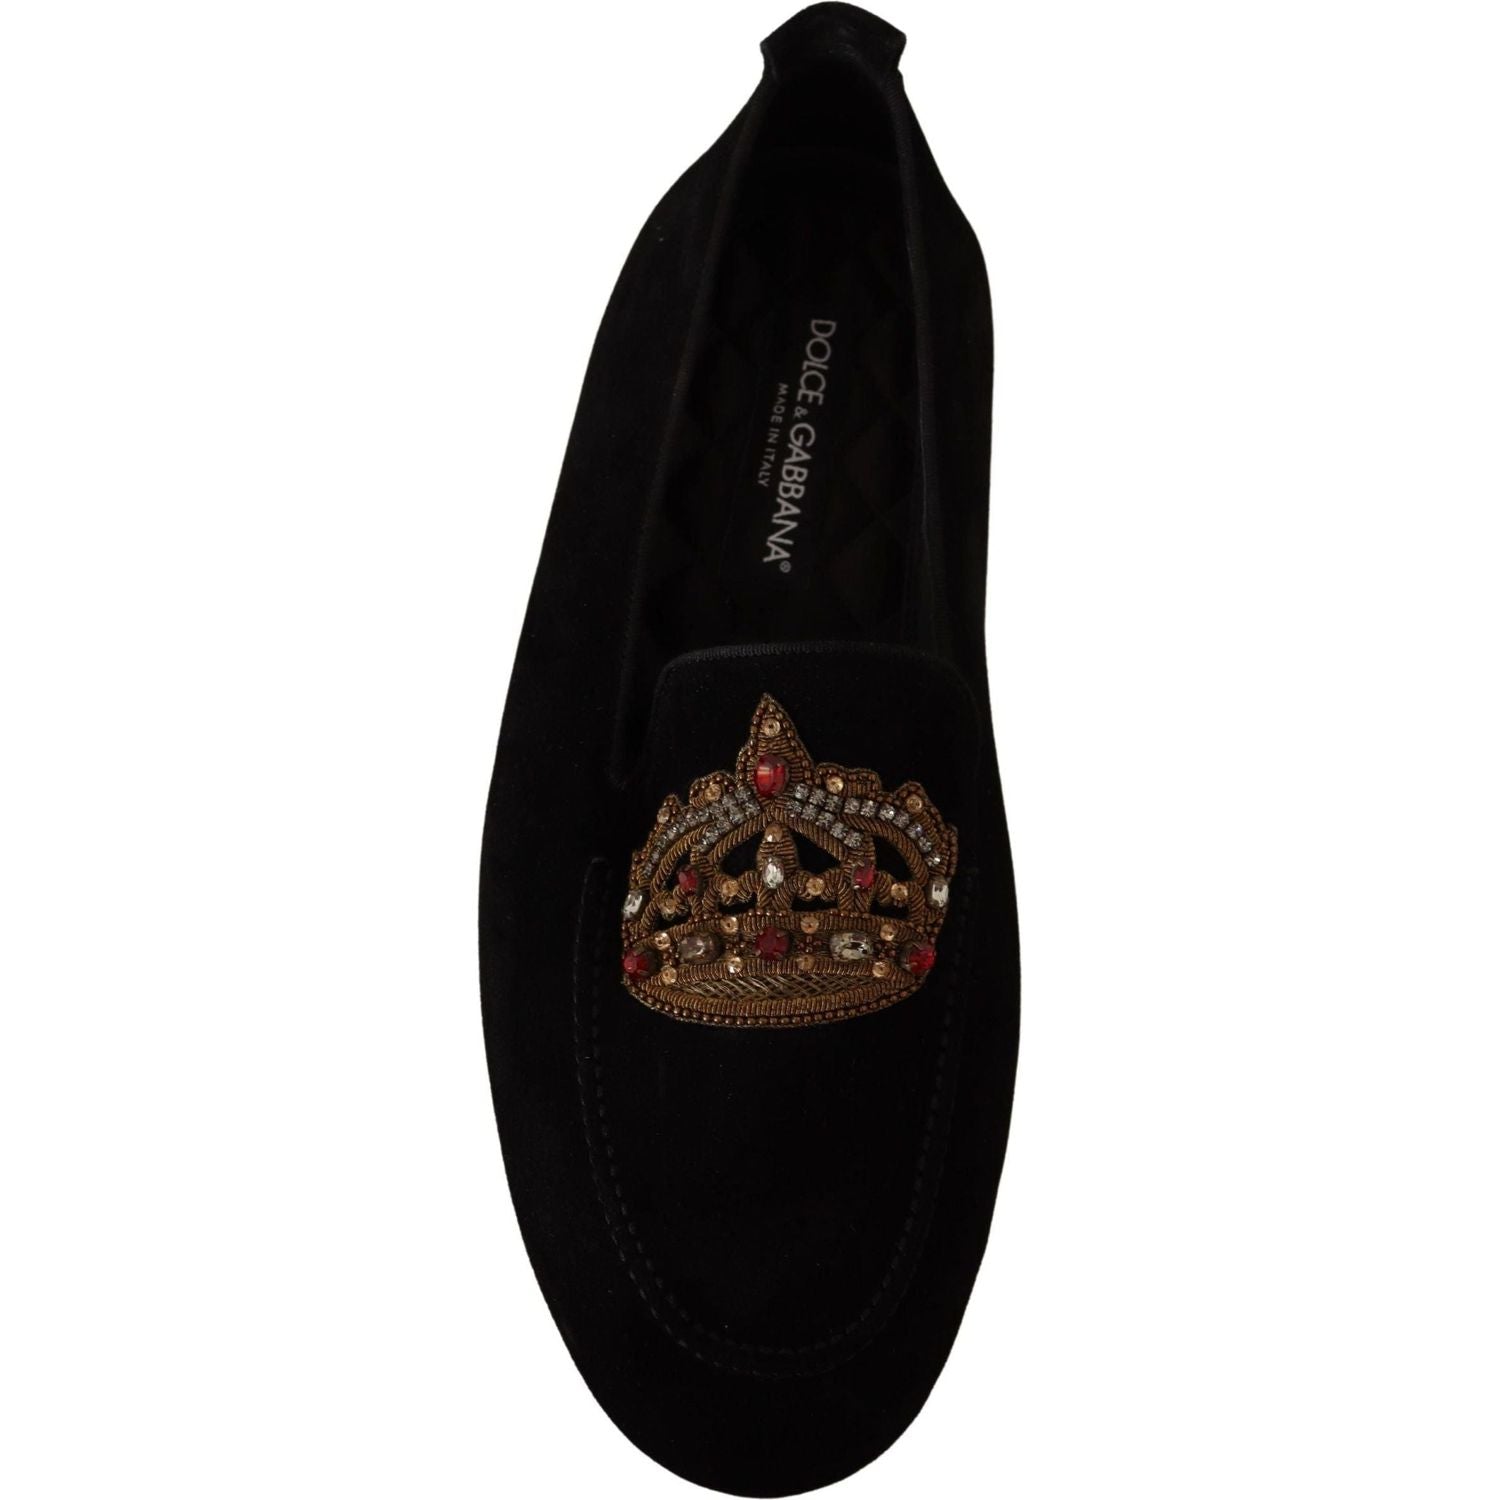 Dolce & Gabbana | Black Leather Crystal Gold Crown Loafers Shoes | 729.00 - McRichard Designer Brands